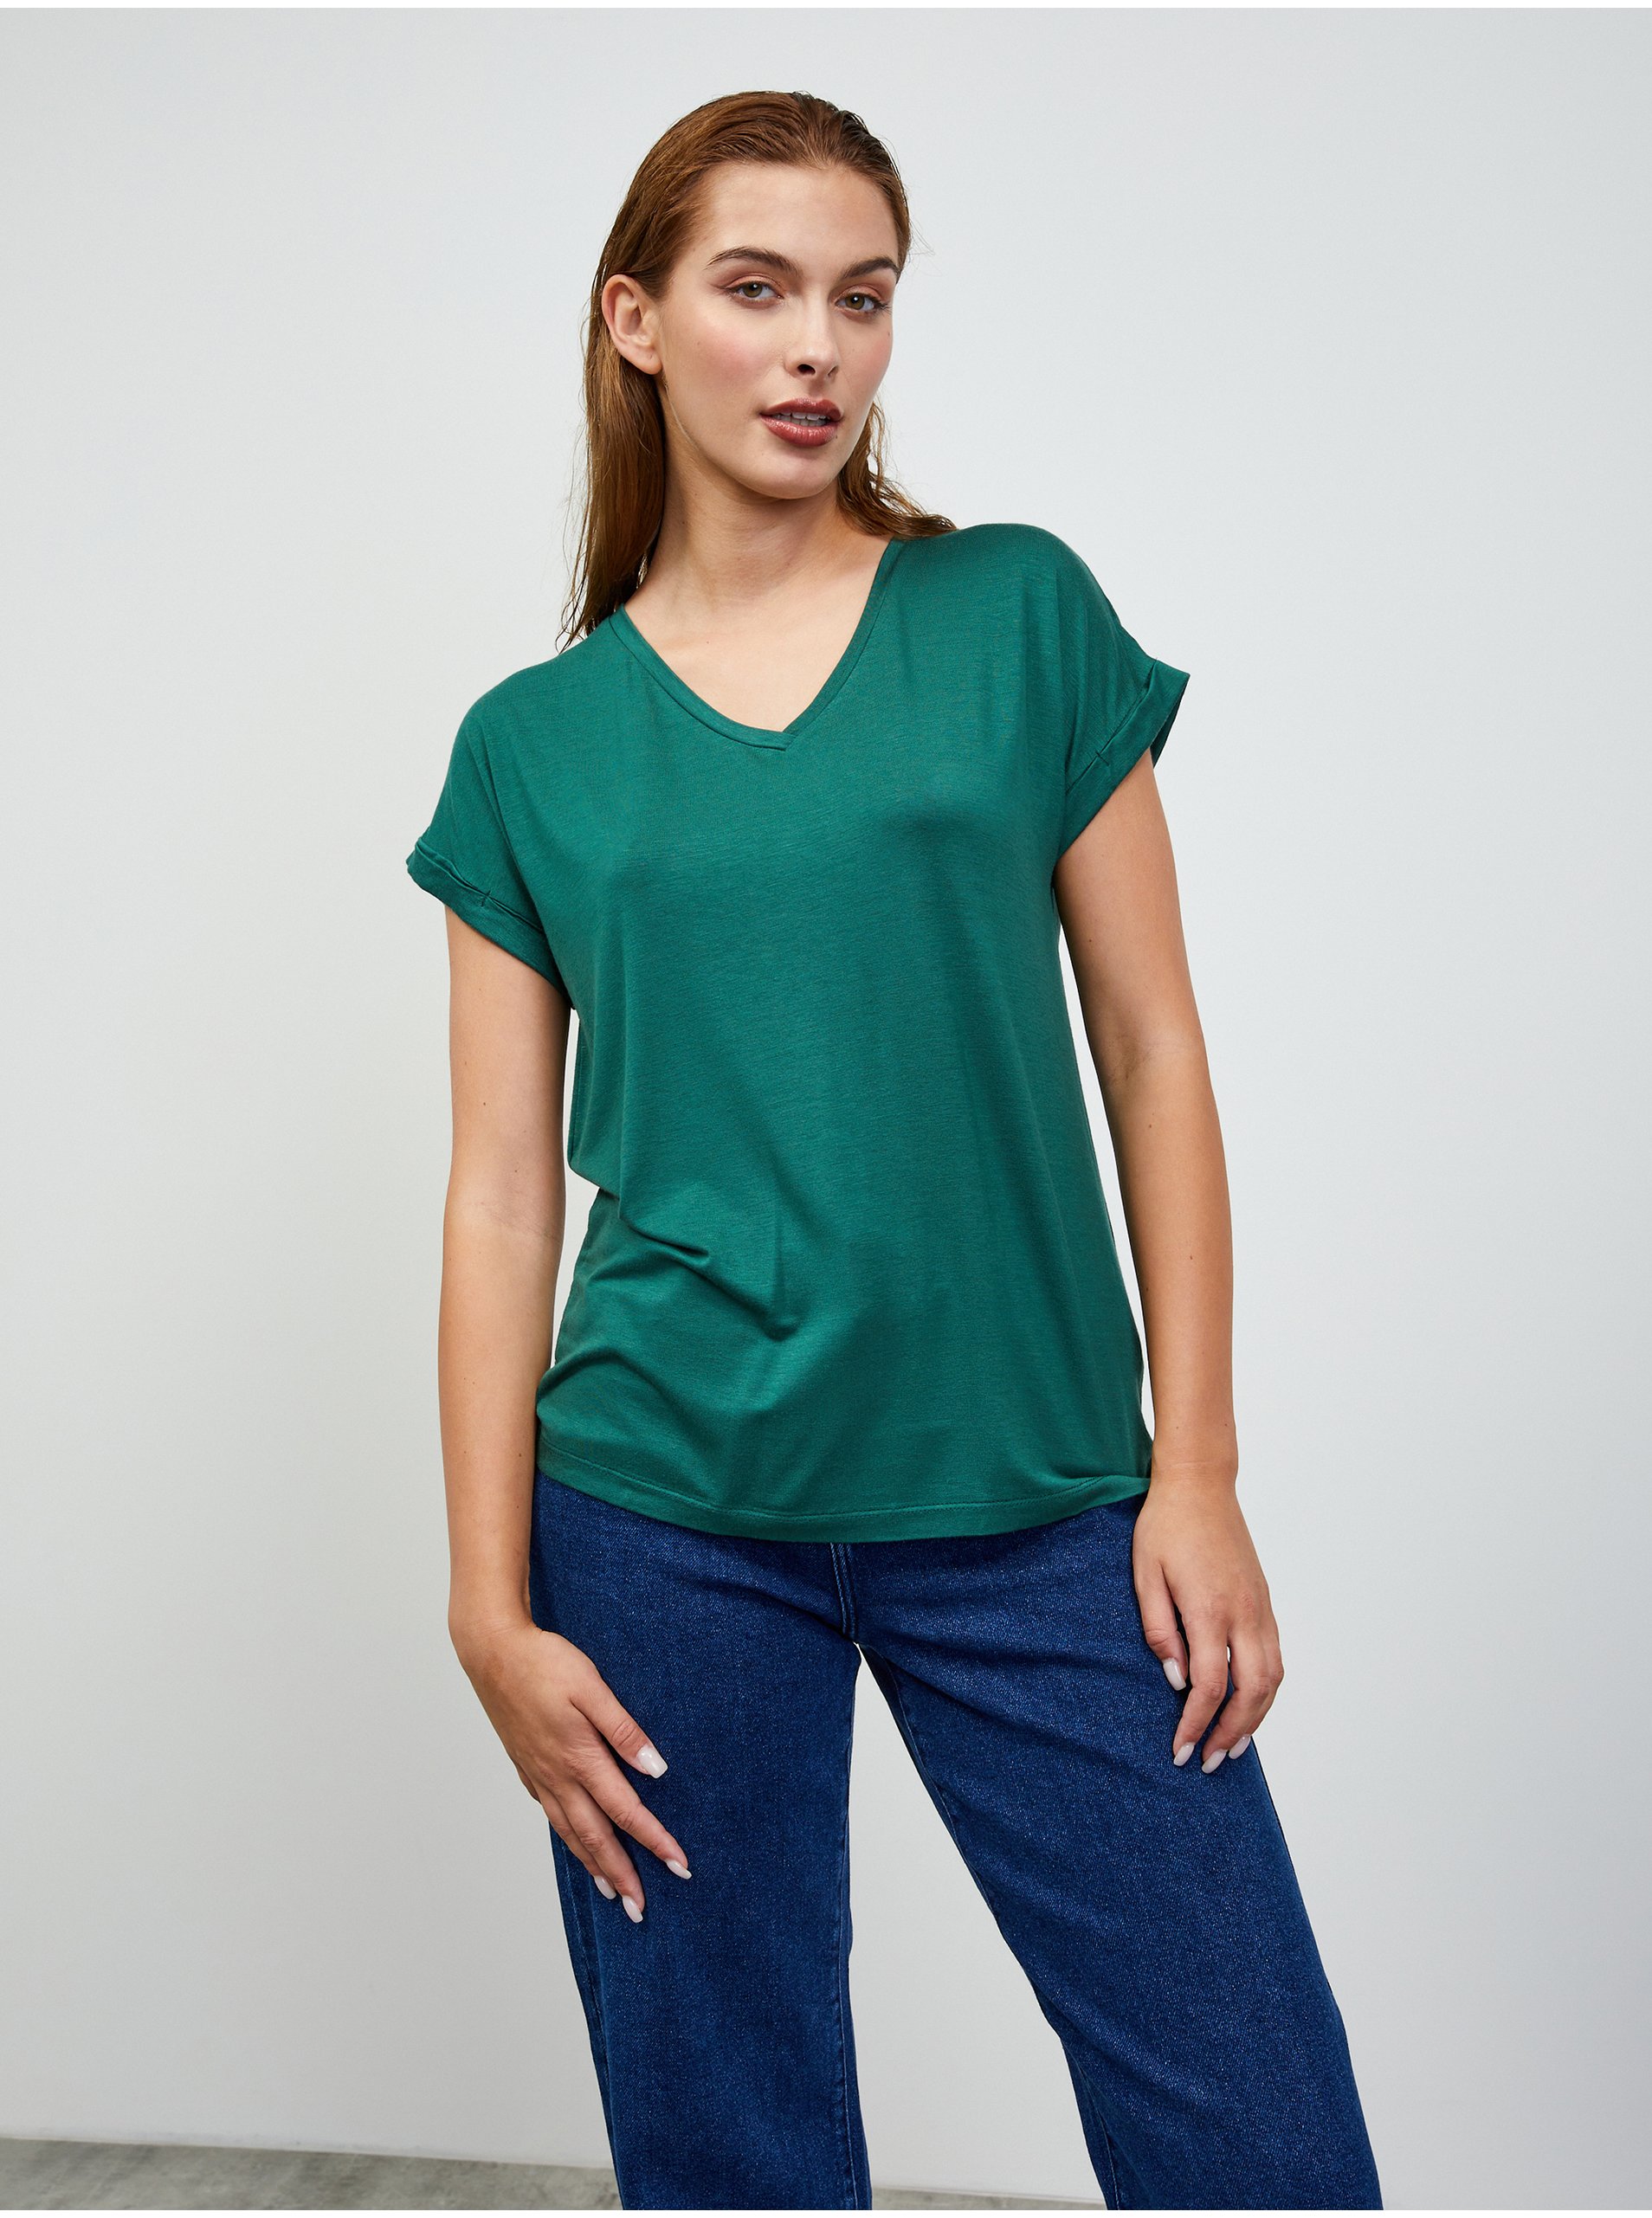 Lacno Zelené dámske melírované basic tričko ZOOT.lab Adriana 3